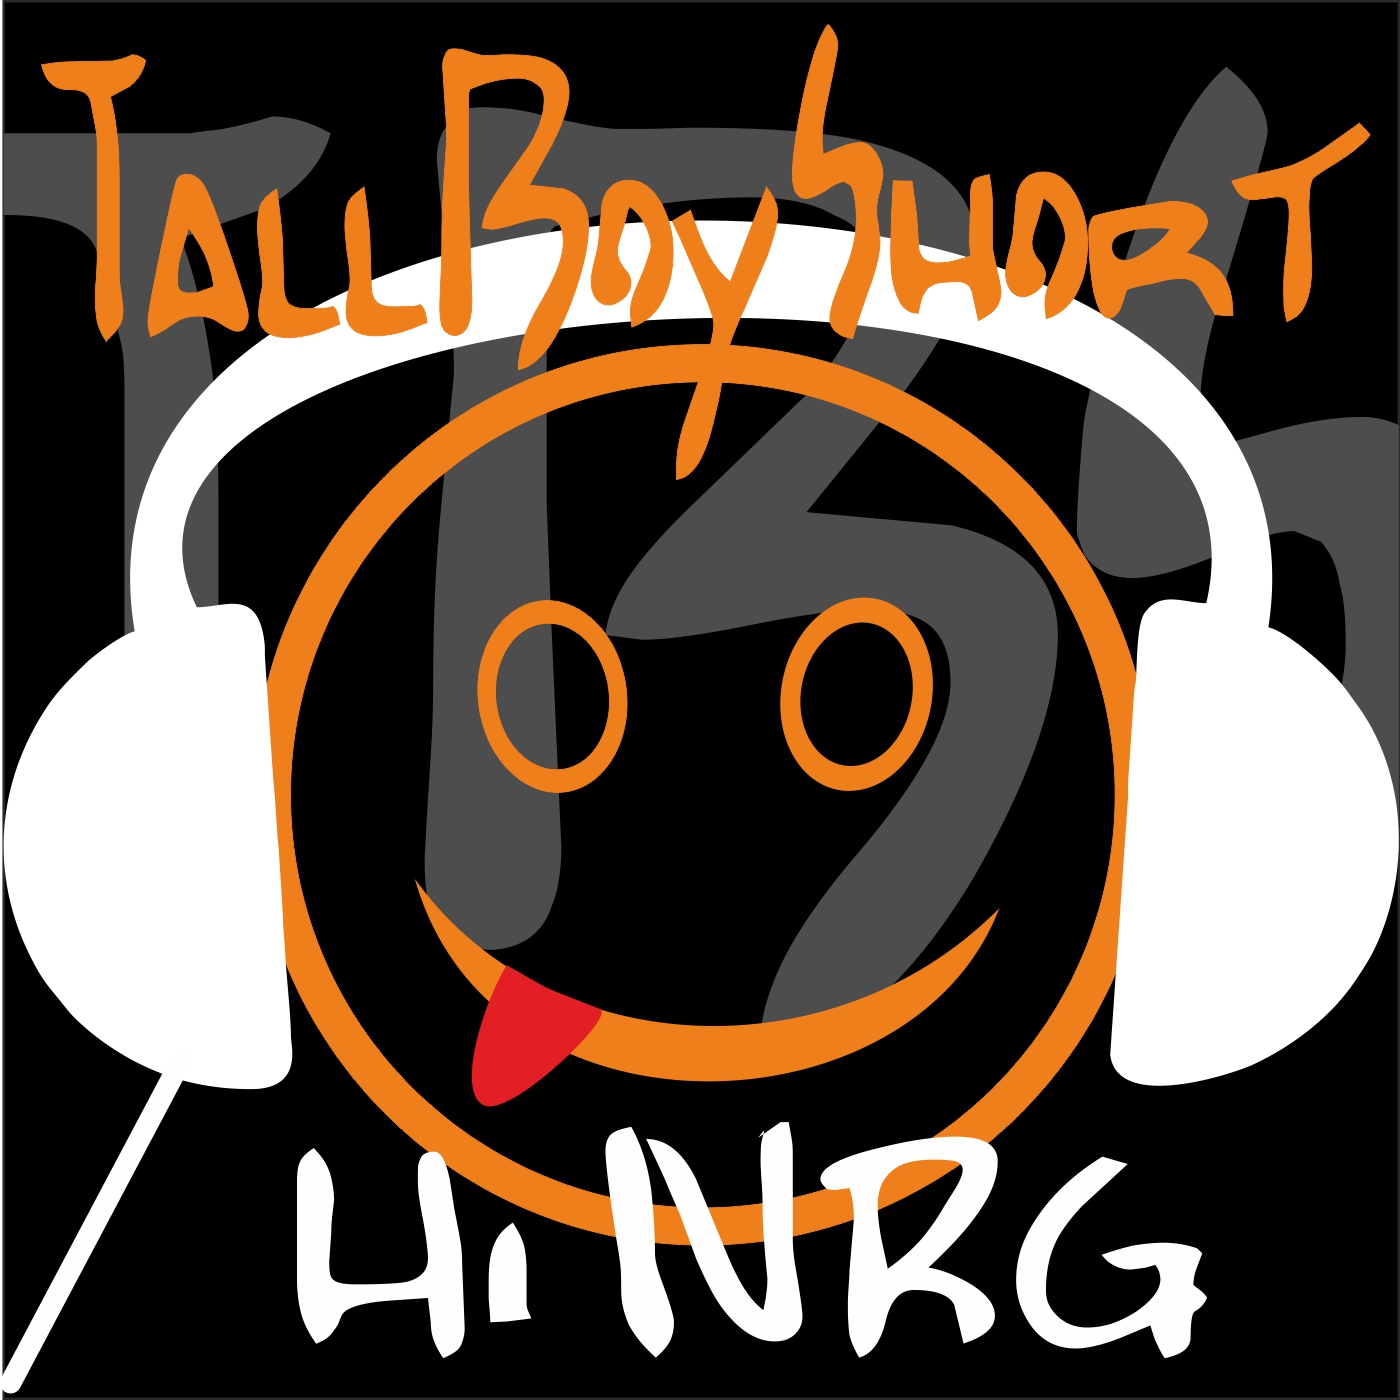 TallBoyShort Hi NRG